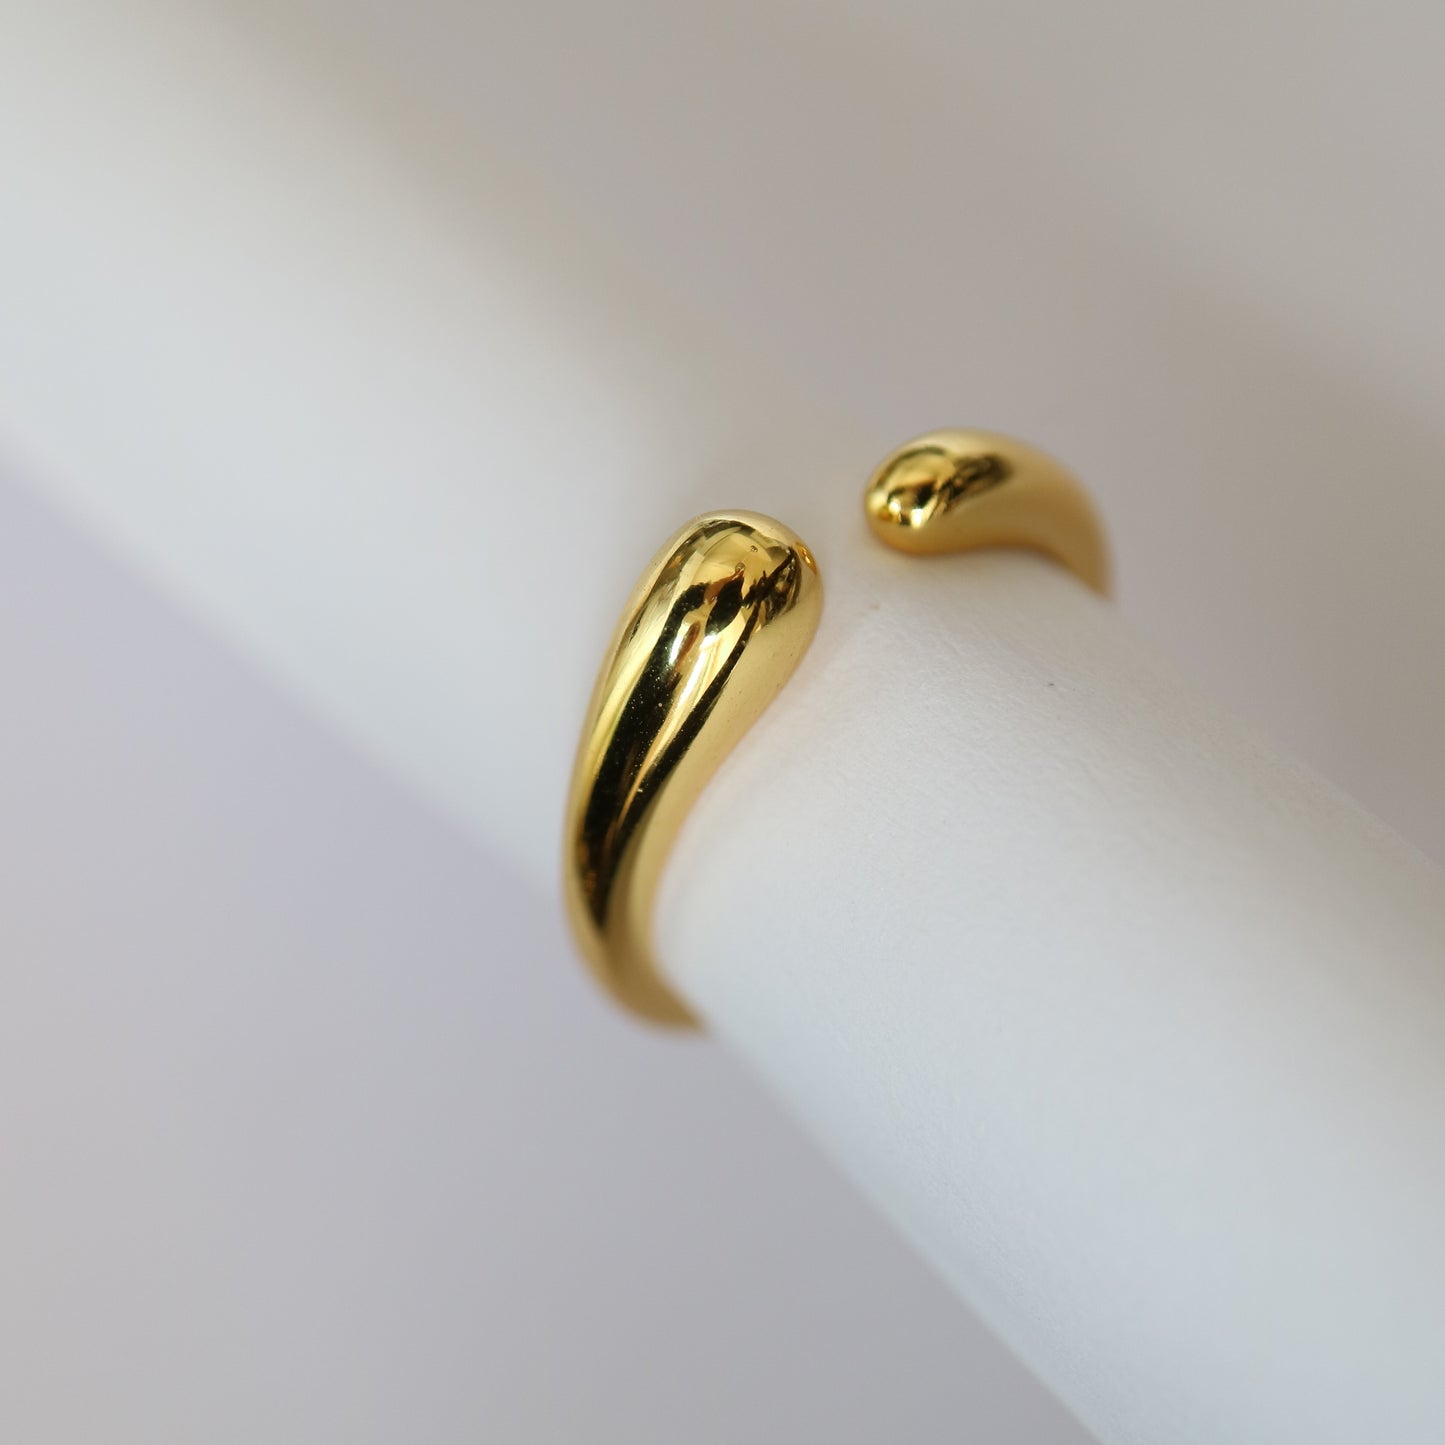 Hermes Ring in gold